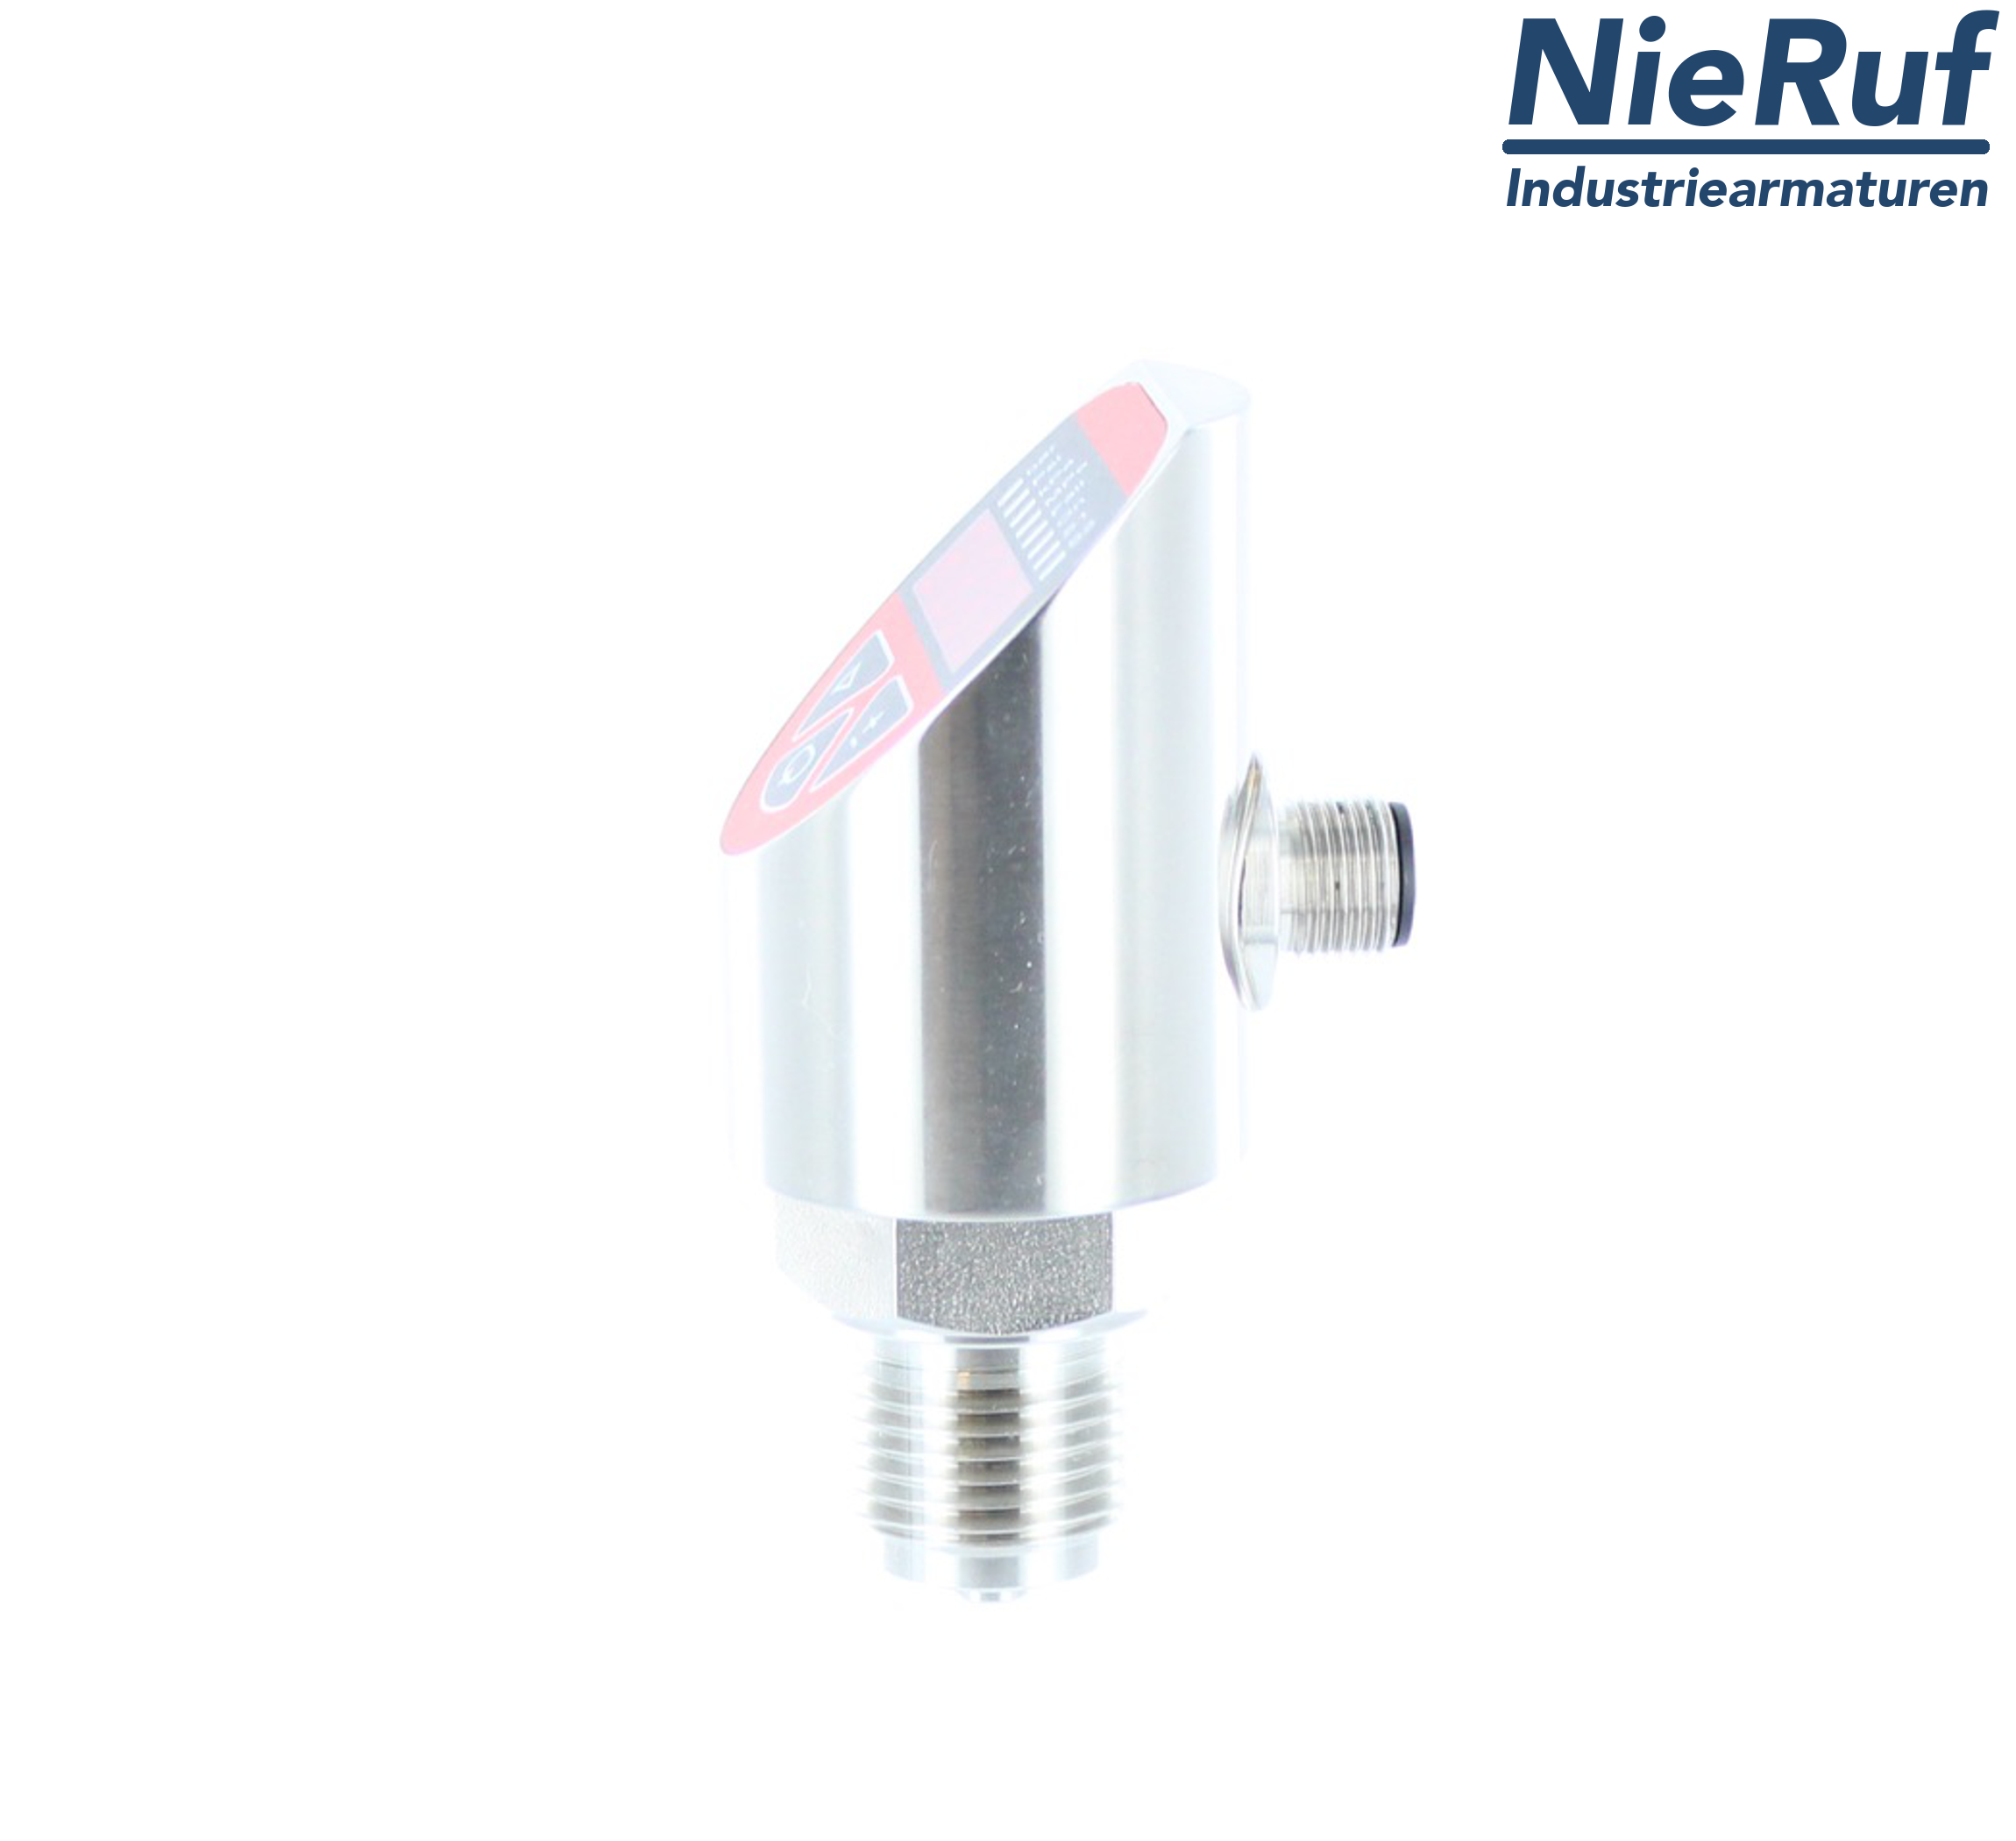 sensore di pressione digitale G 1/2" B IB  5-fili: 2xPNP, 1x4 - 20mA FPM 0,0 - 160,0 bar